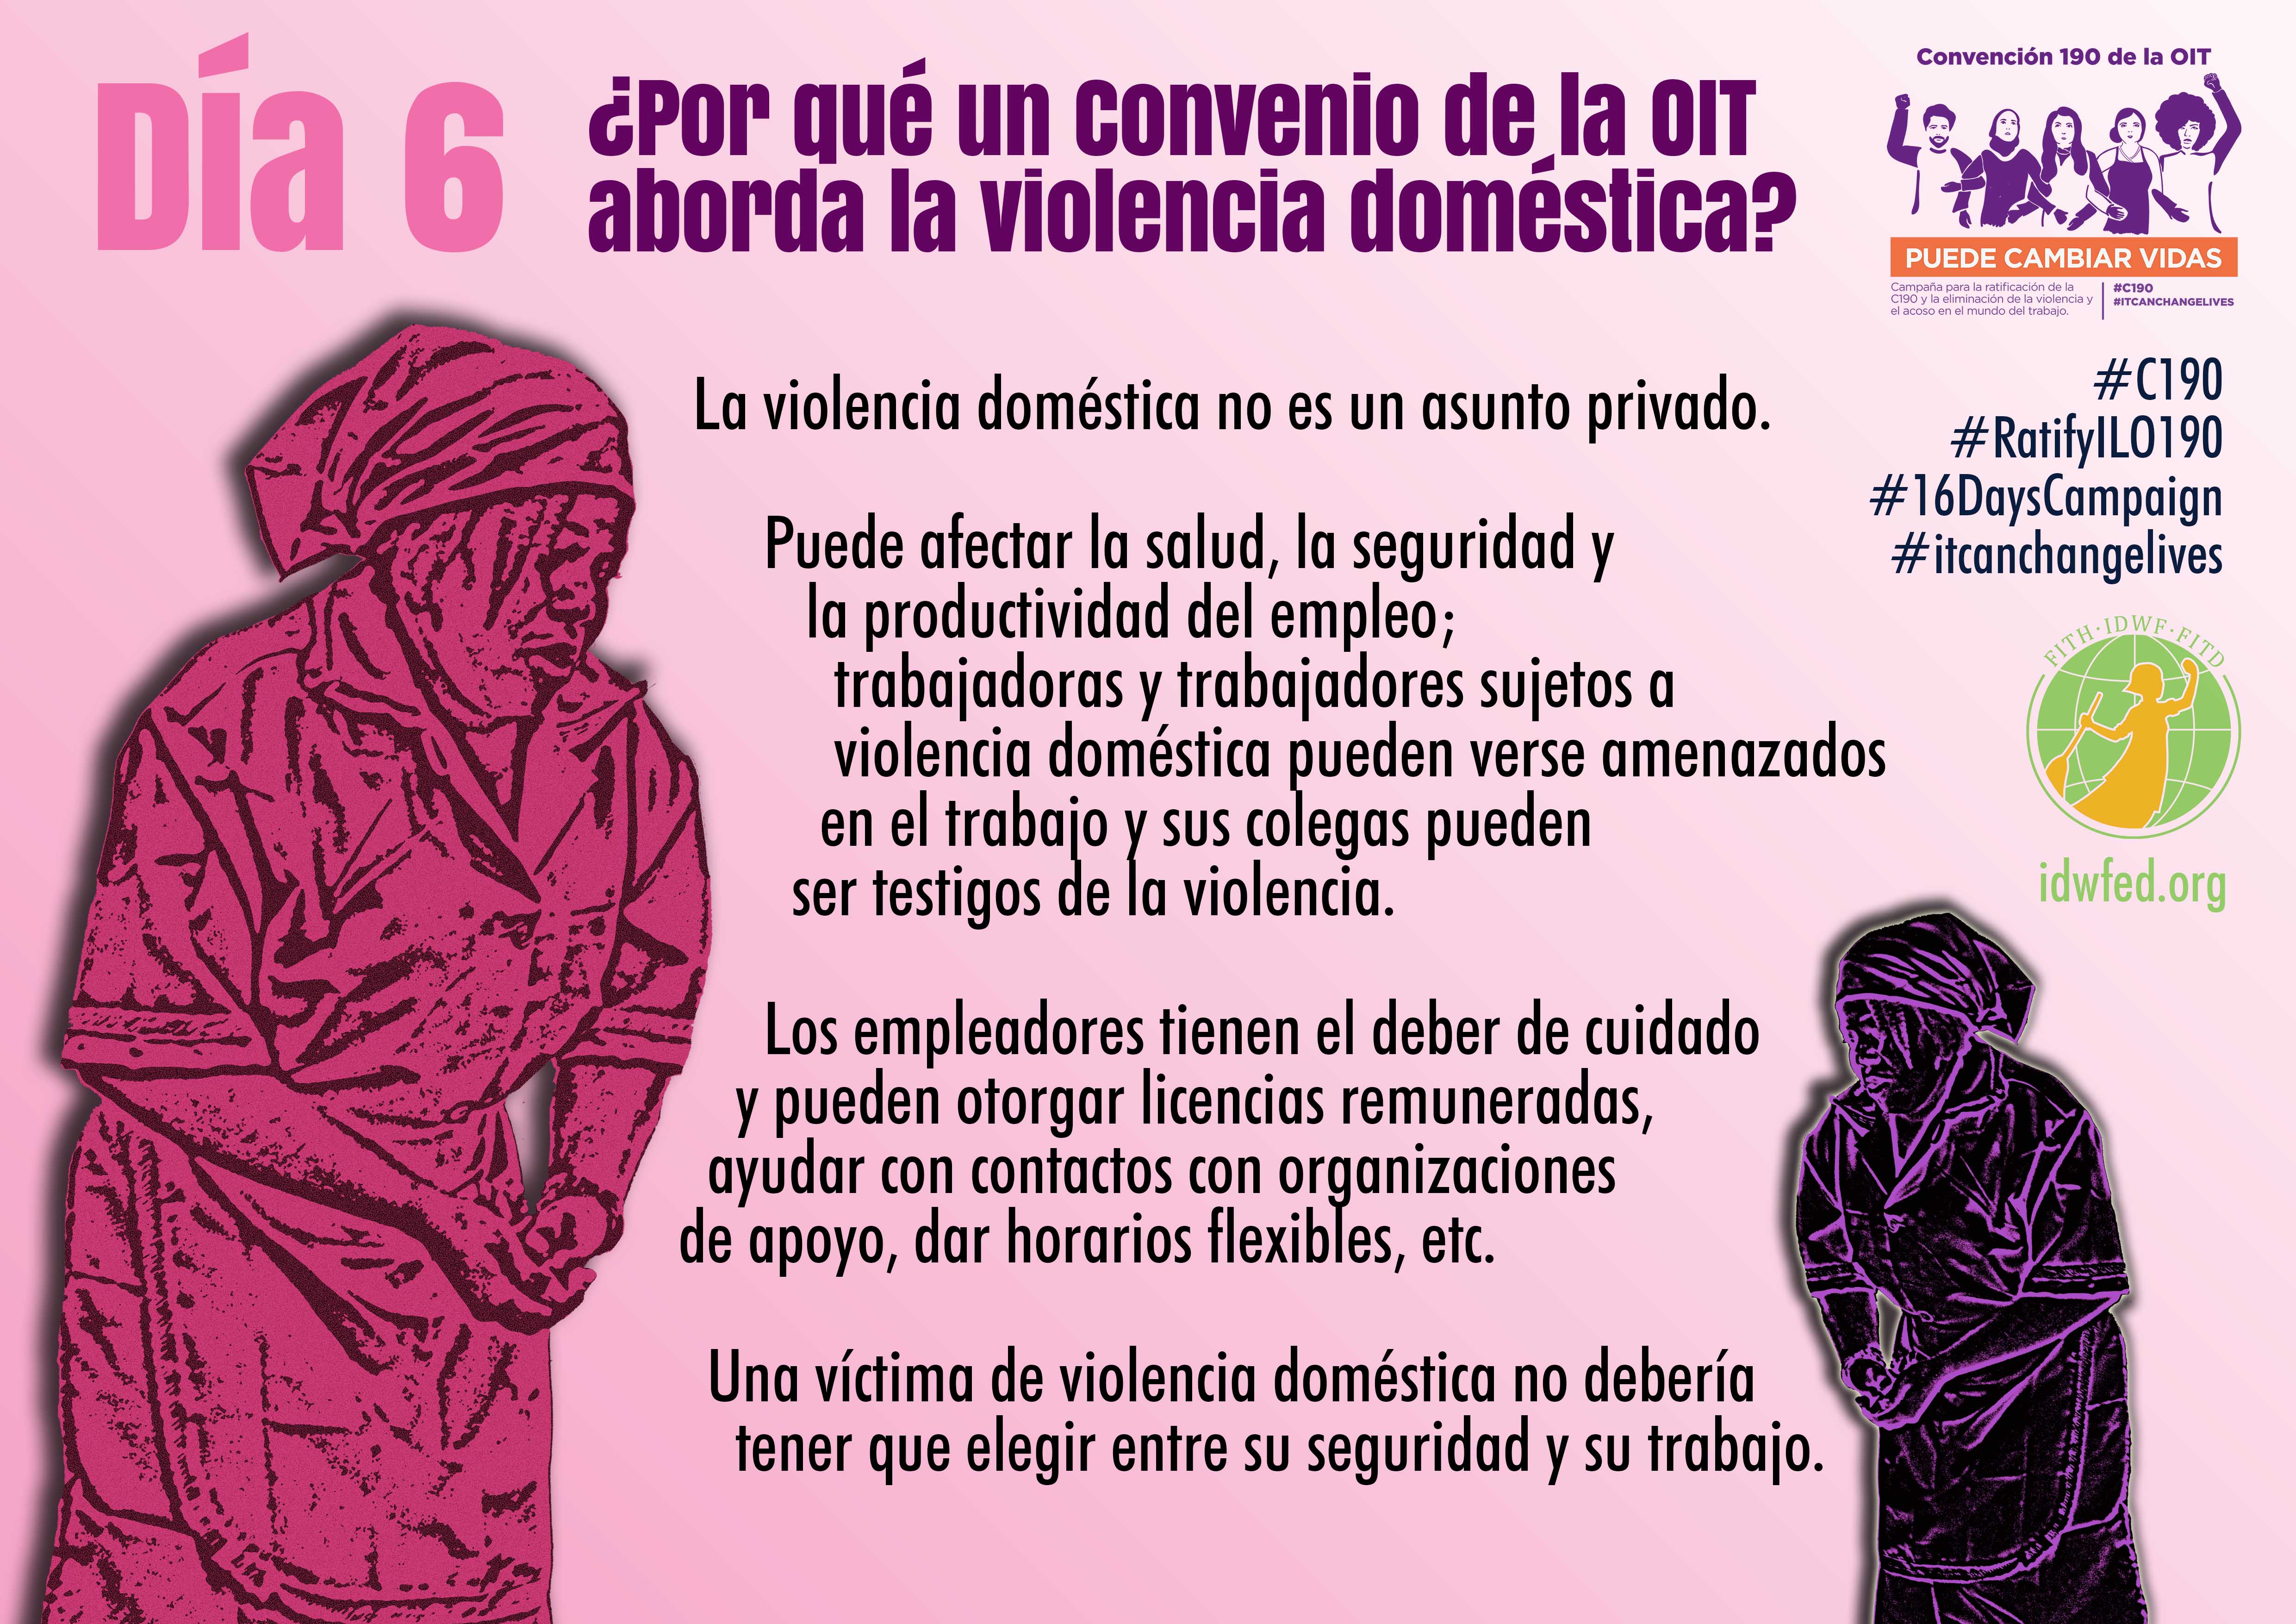 6. ¿Por qué un Convenio de la OIT aborda la violencia doméstica?